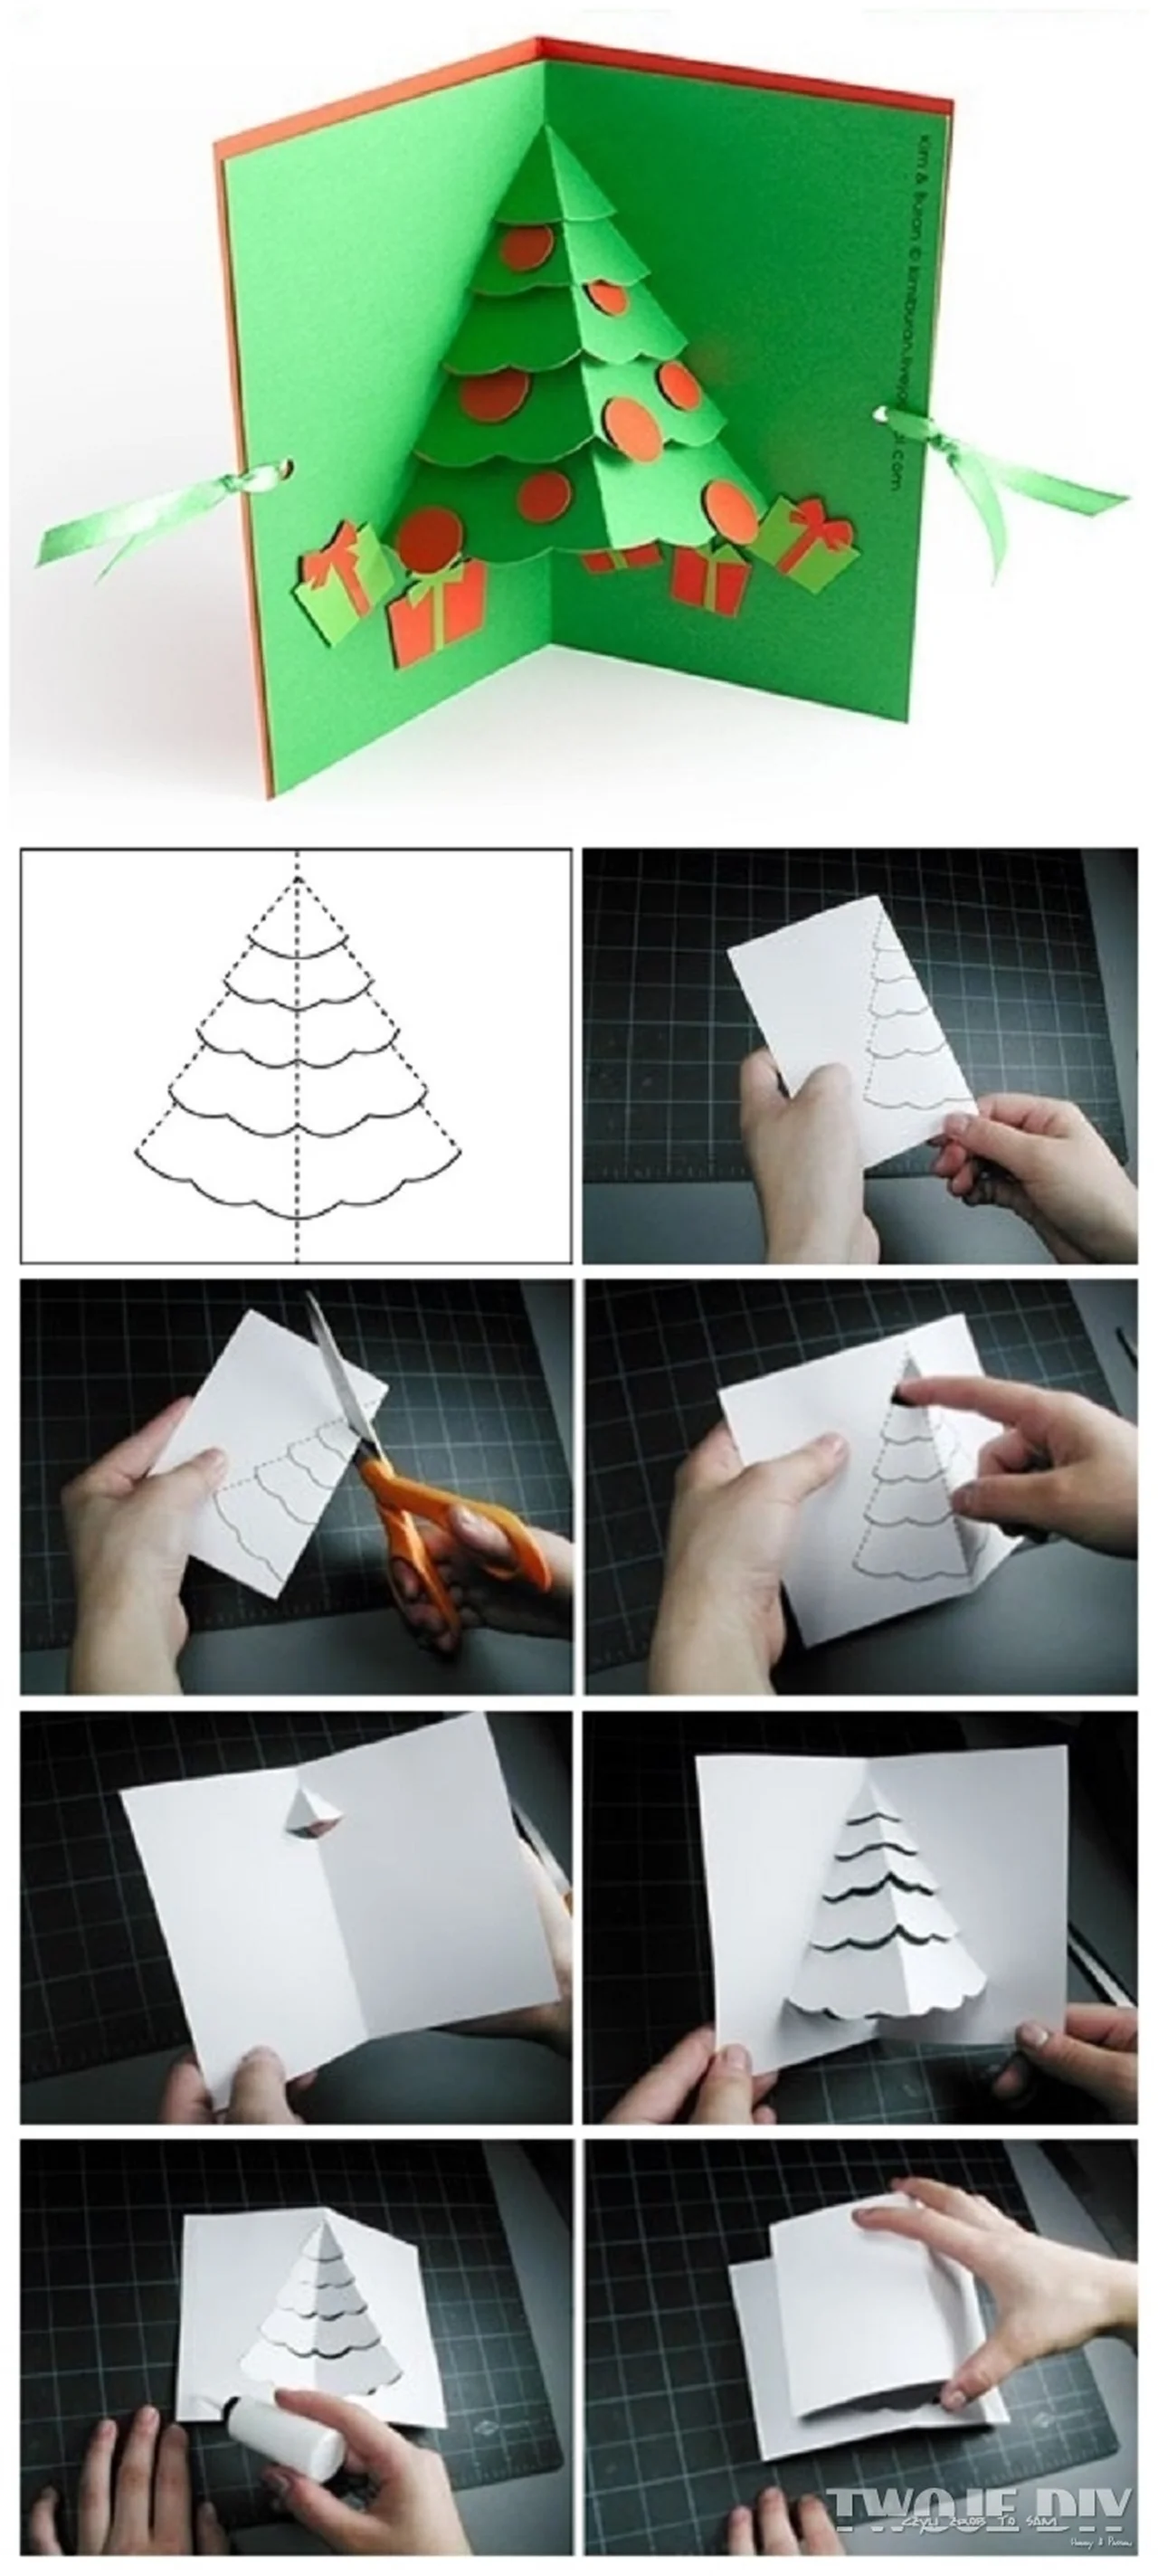 Świetny pomysł na kartkę świąteczną